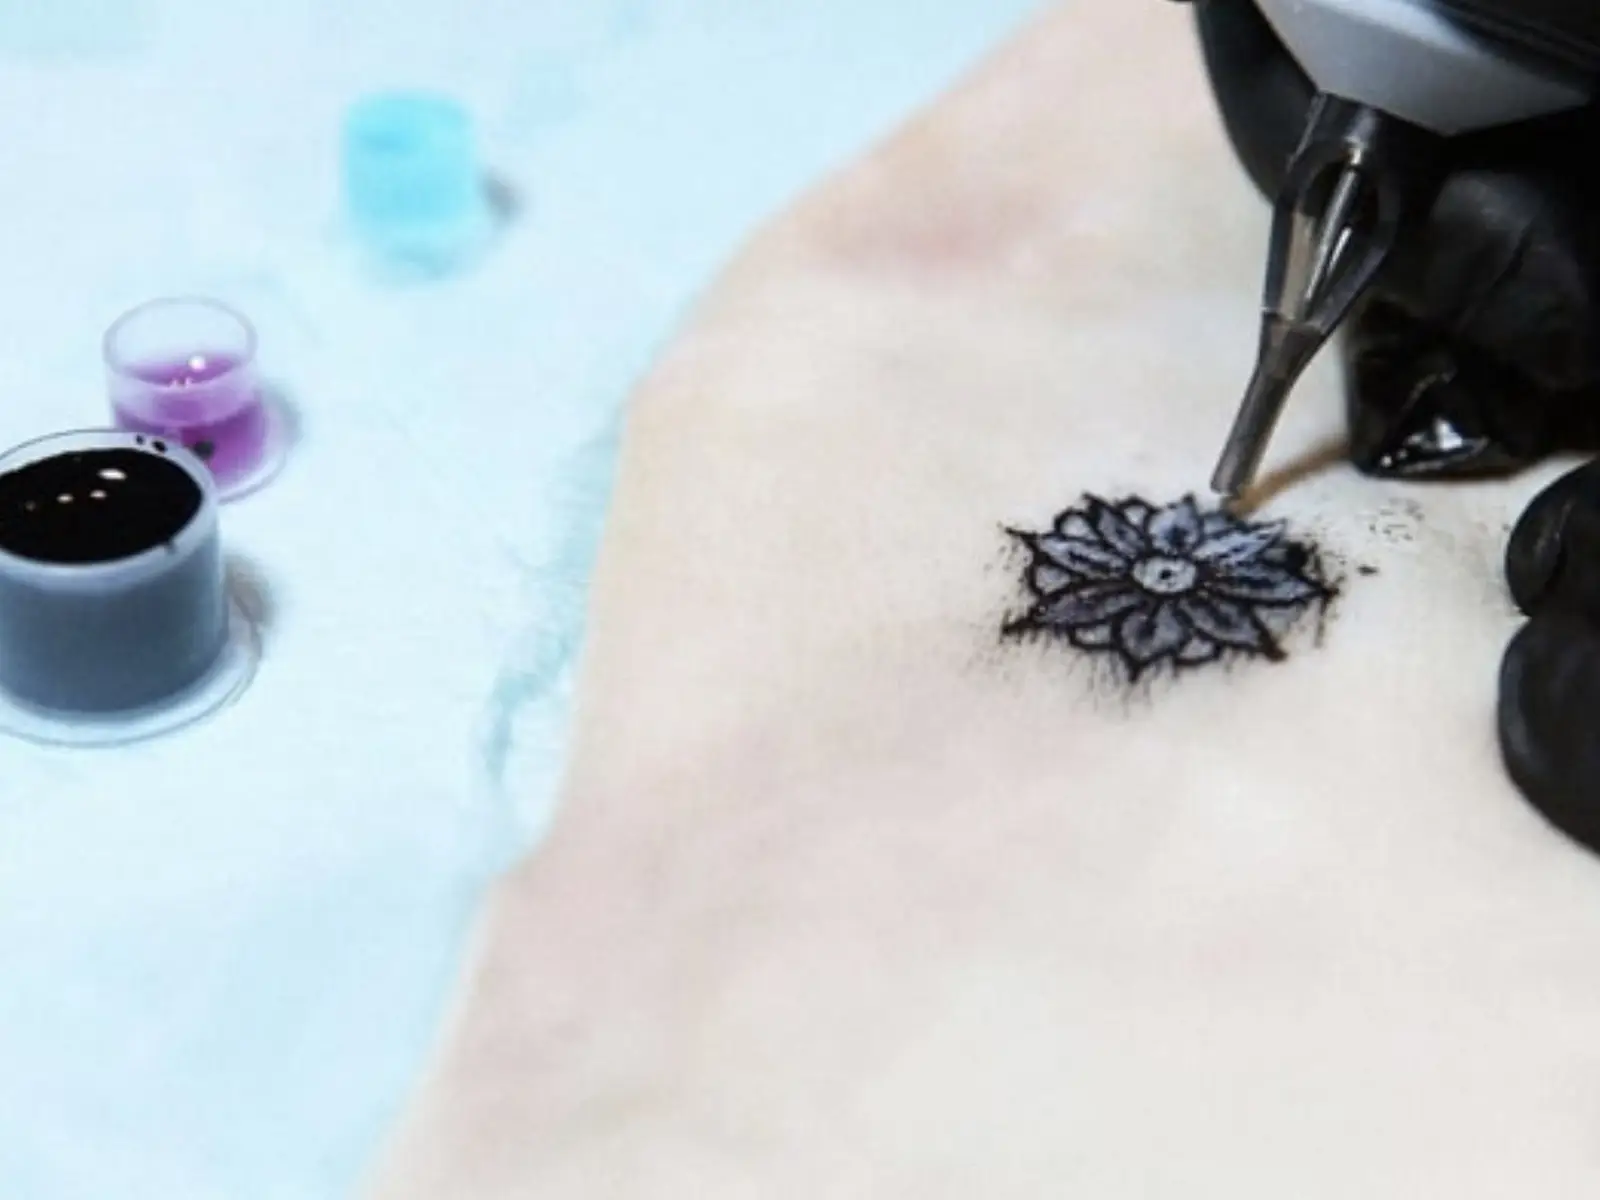 Un tatuaggio biosensibile per monitorare gli zuccheri nel sangue